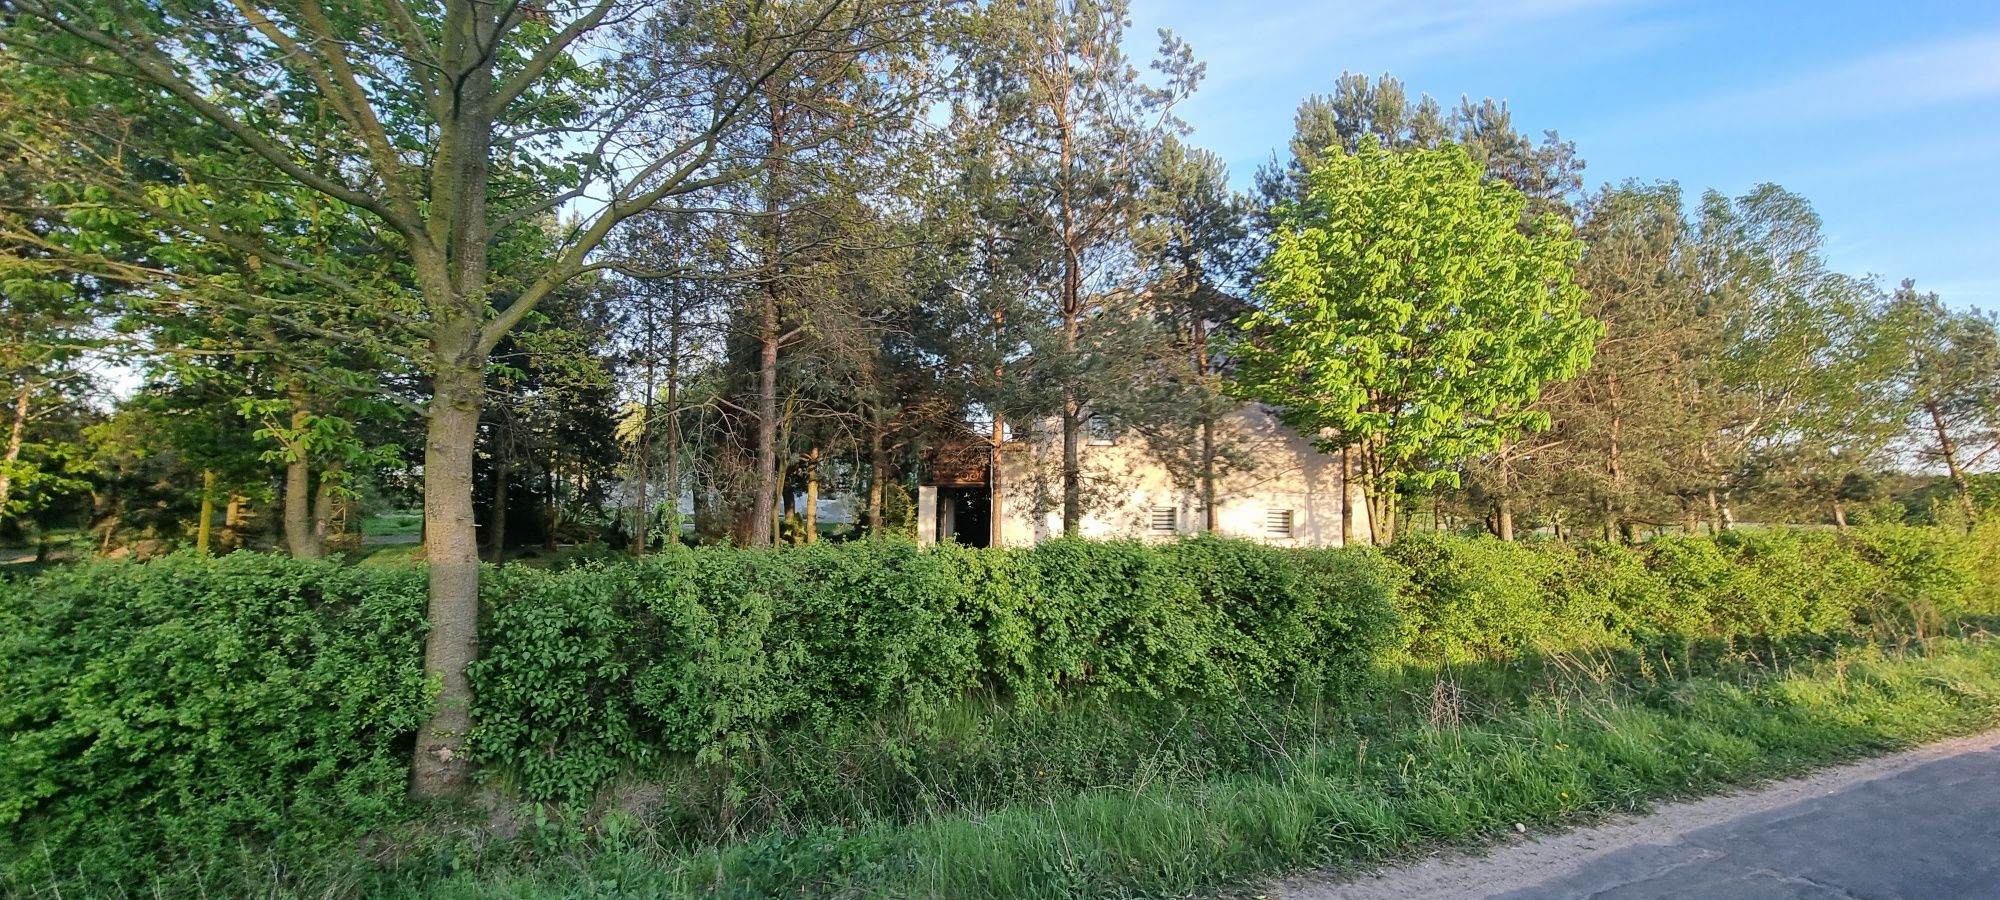 Sprzedam dom na wsi z dużą działką  7 km od Pleszewa